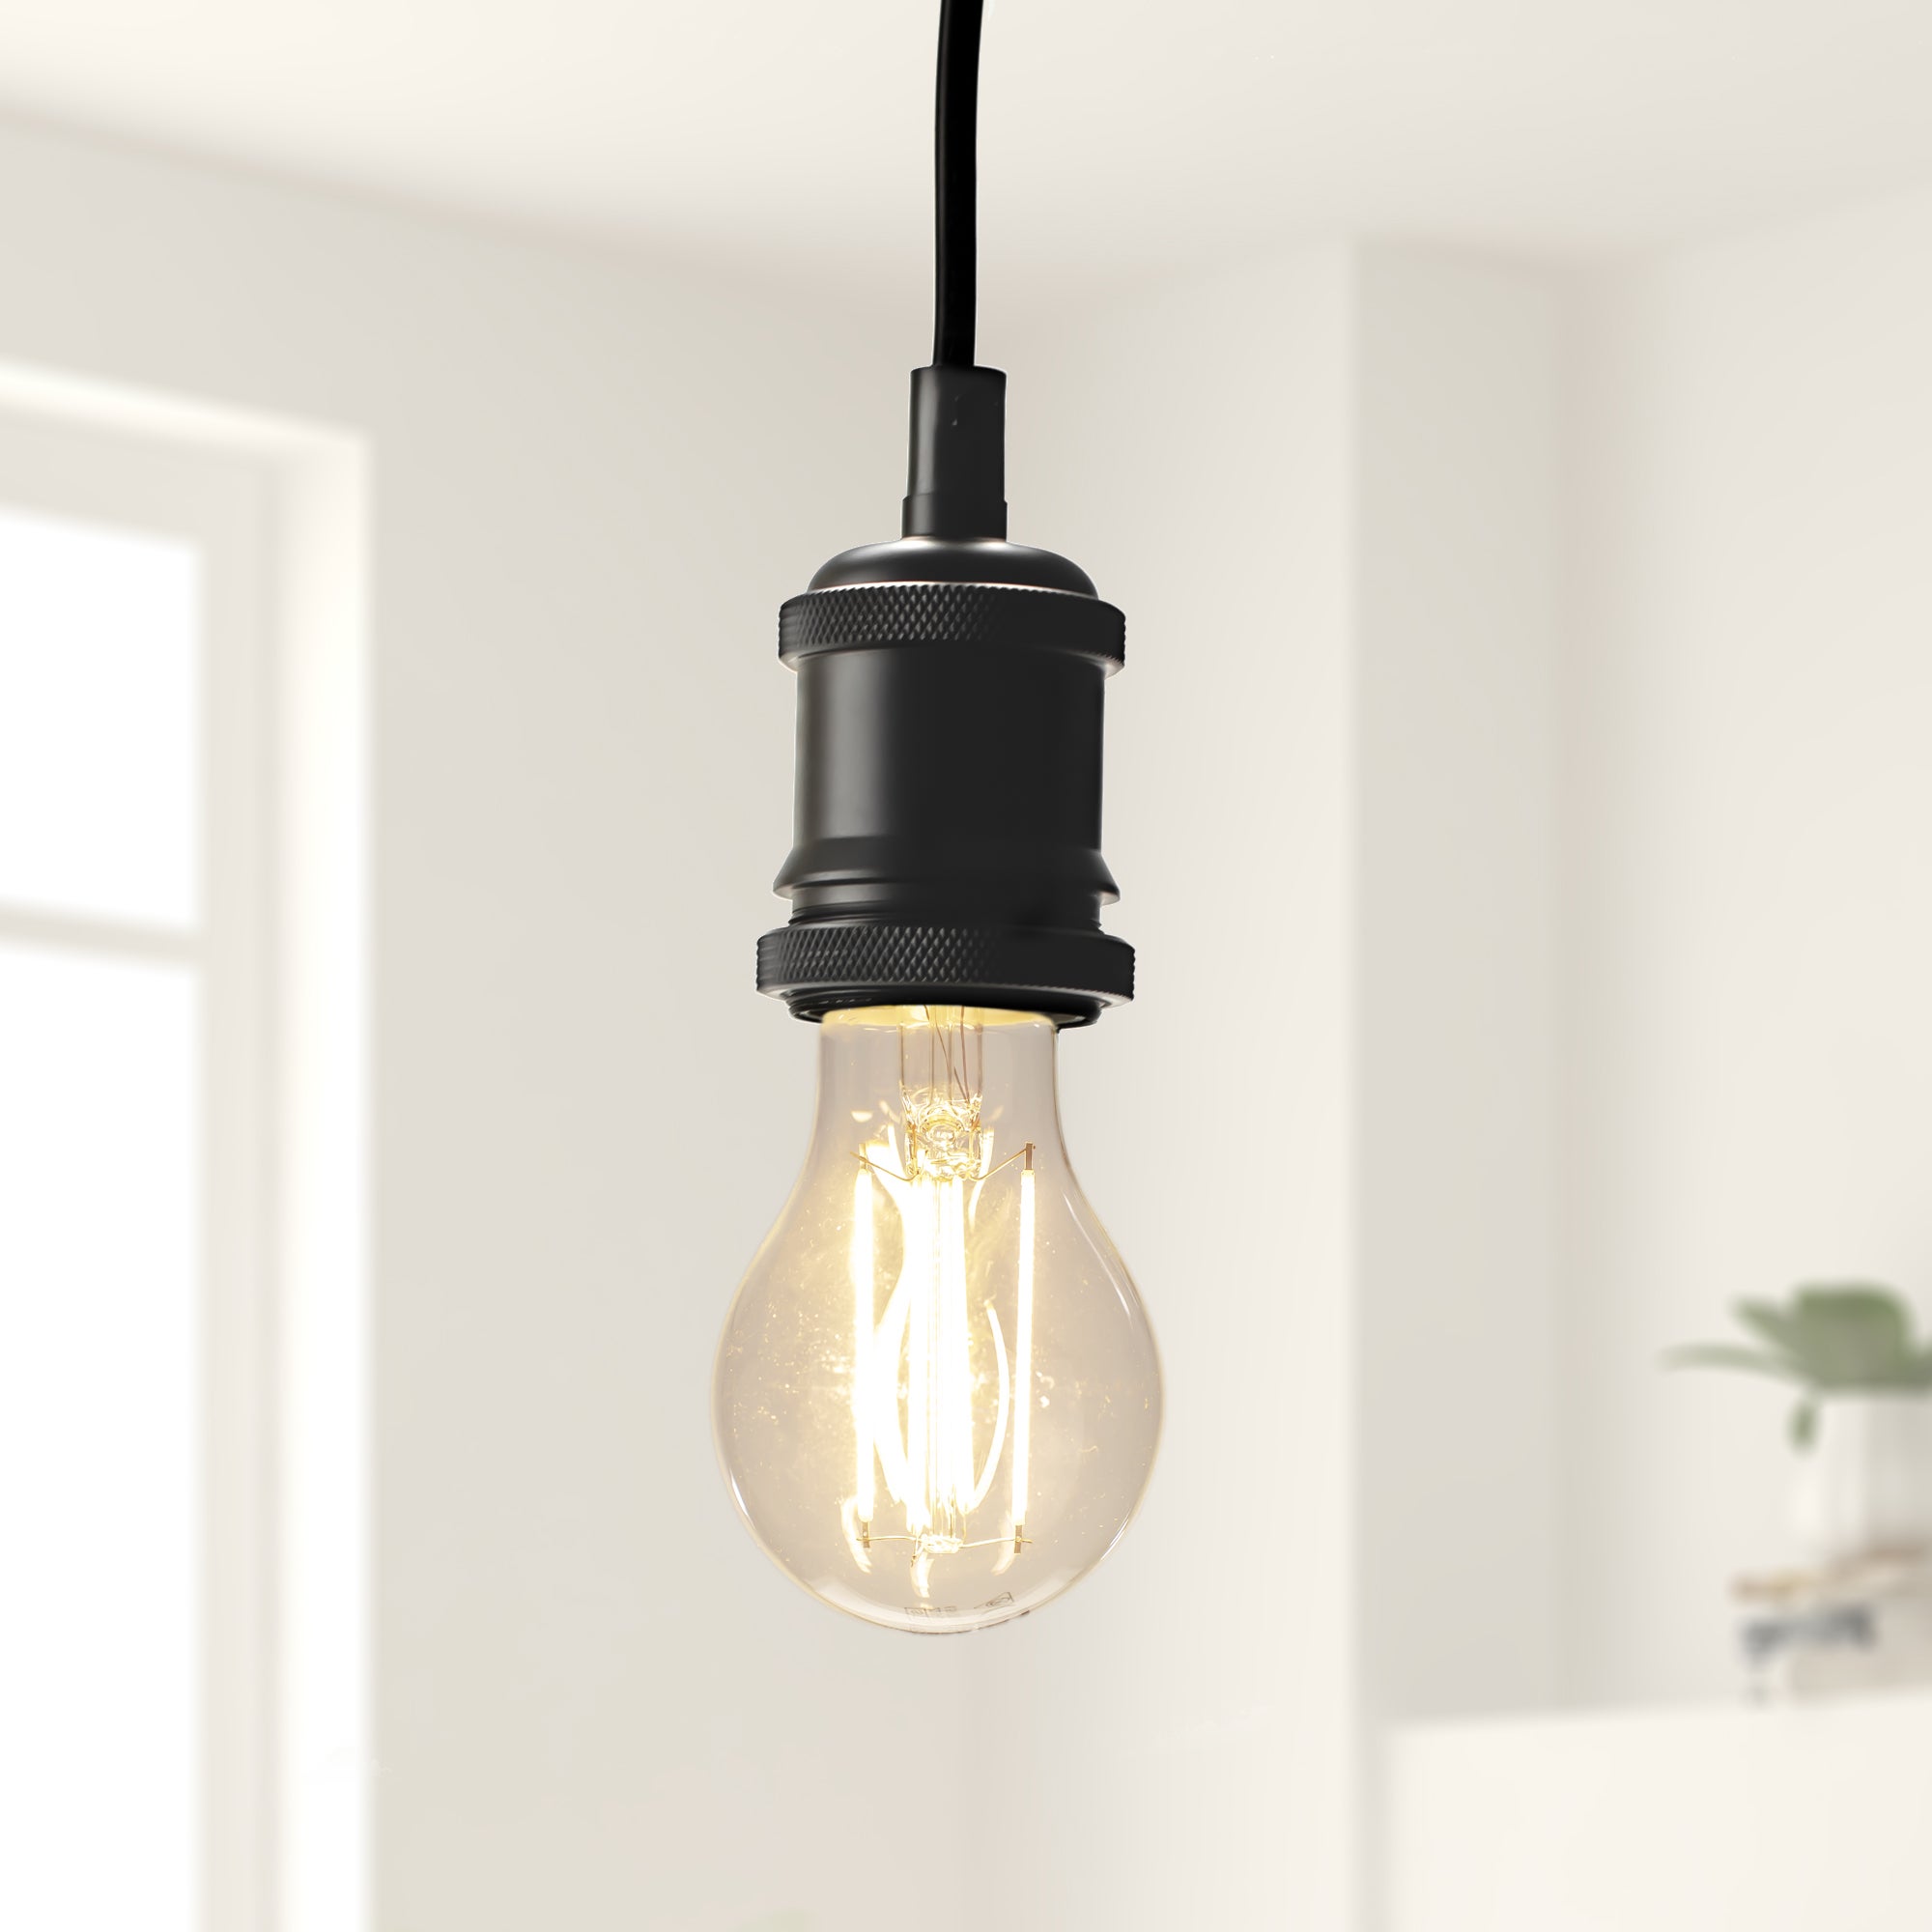 Set of 2 Status 4W ES GLS Filament Bulbs